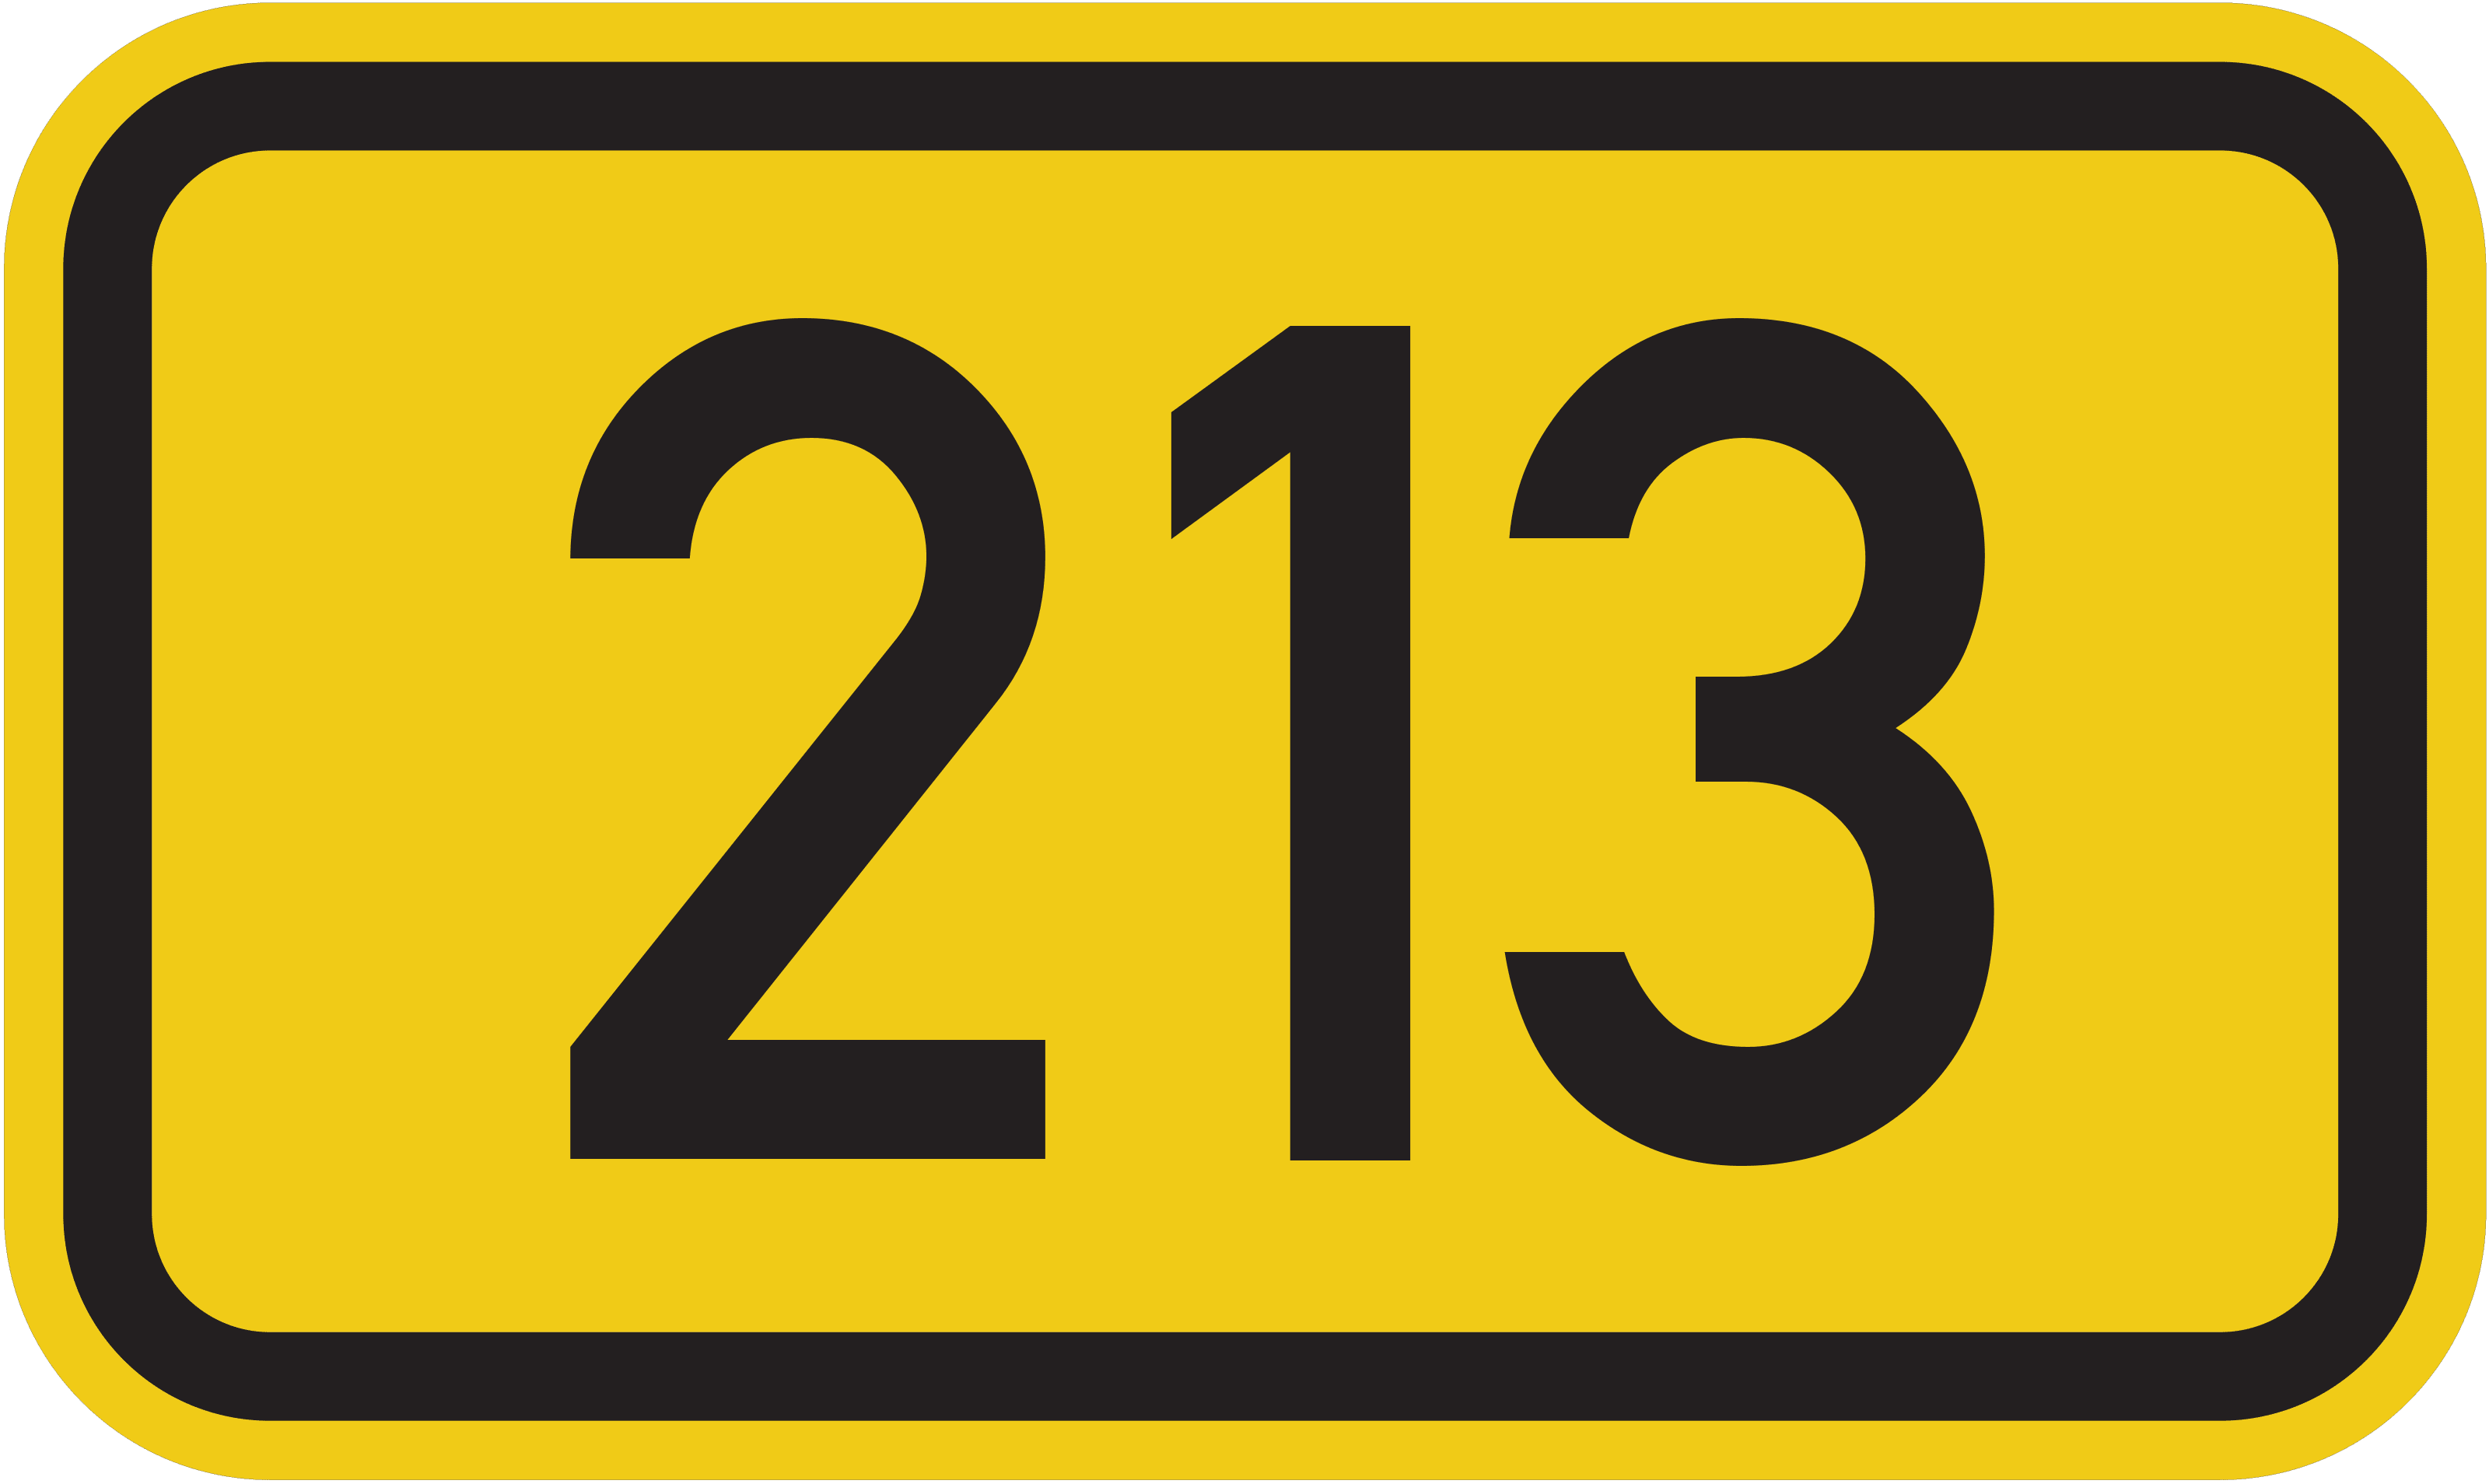 Bundesstraße B 213